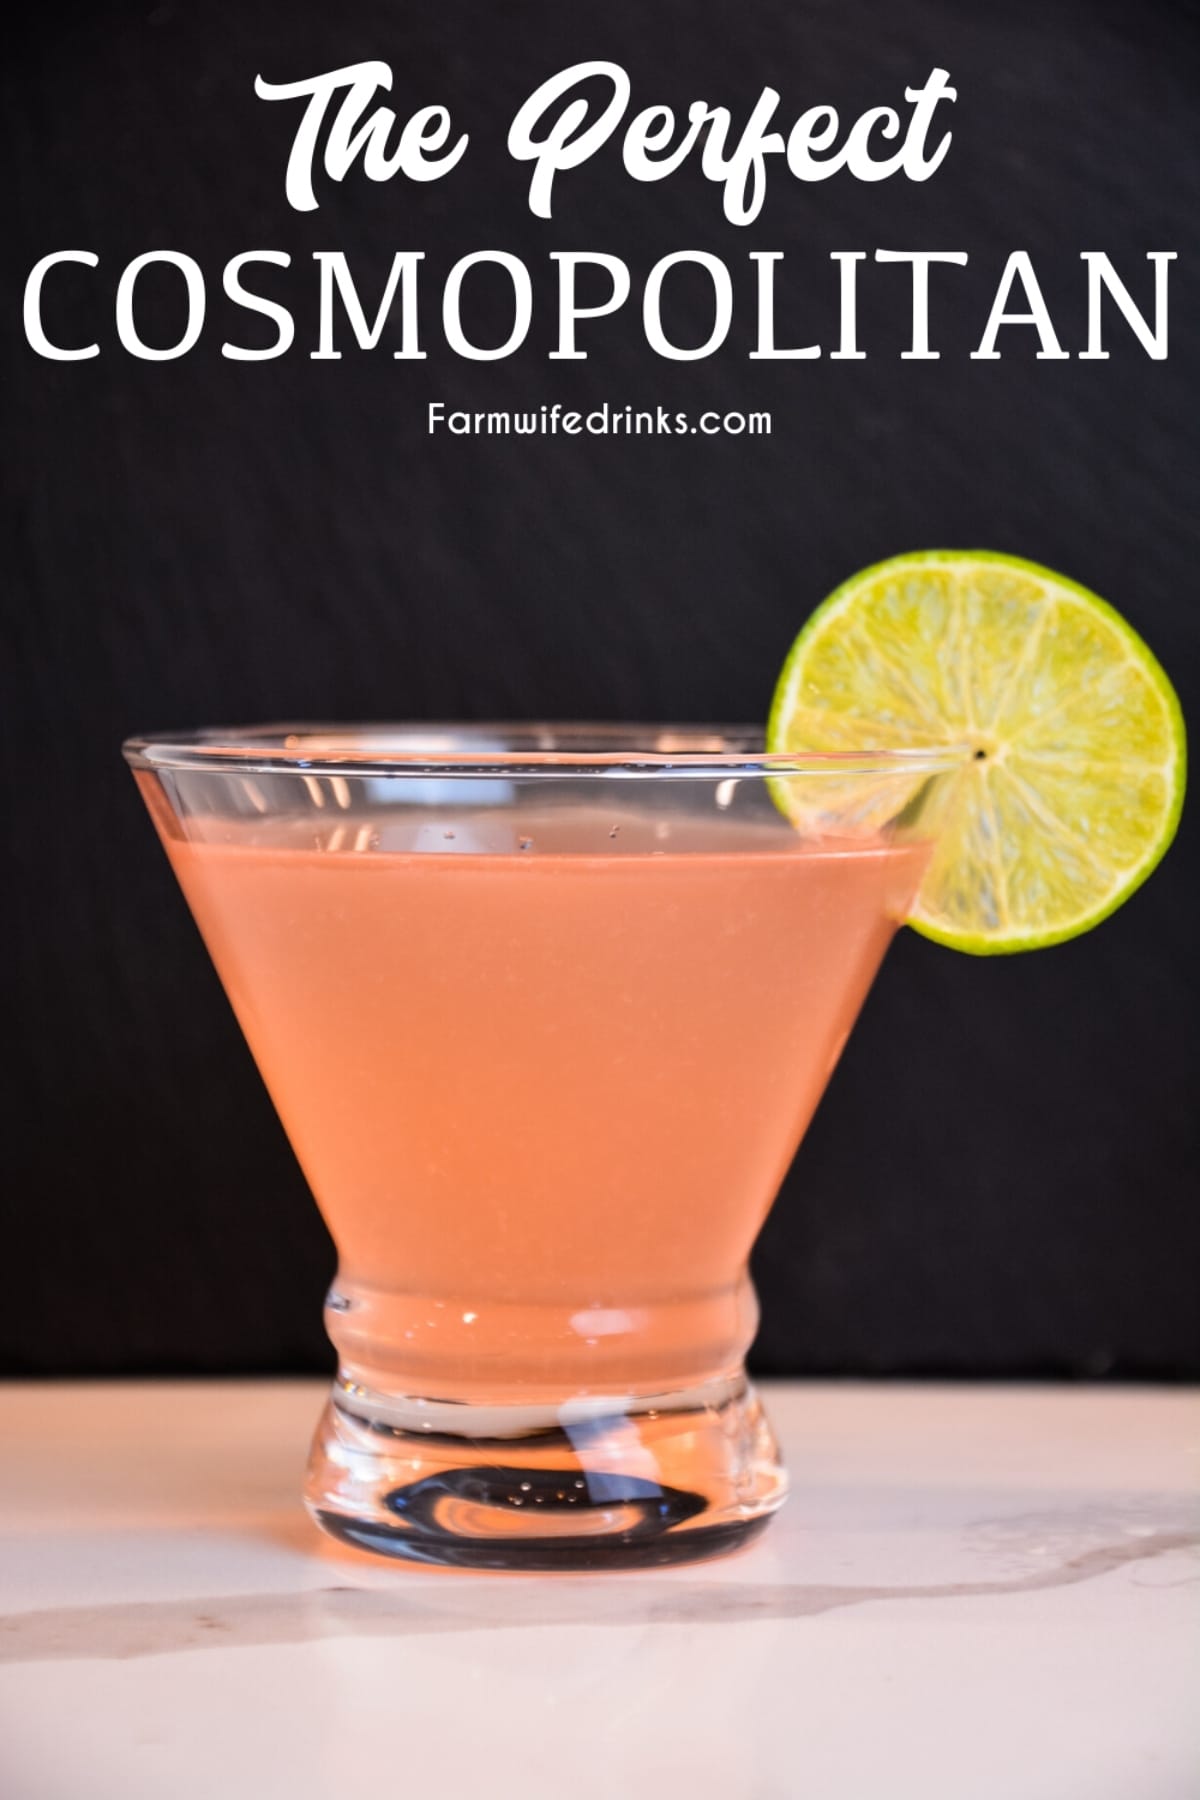 The-Perfect-Cosmopolitan-martini-recipes